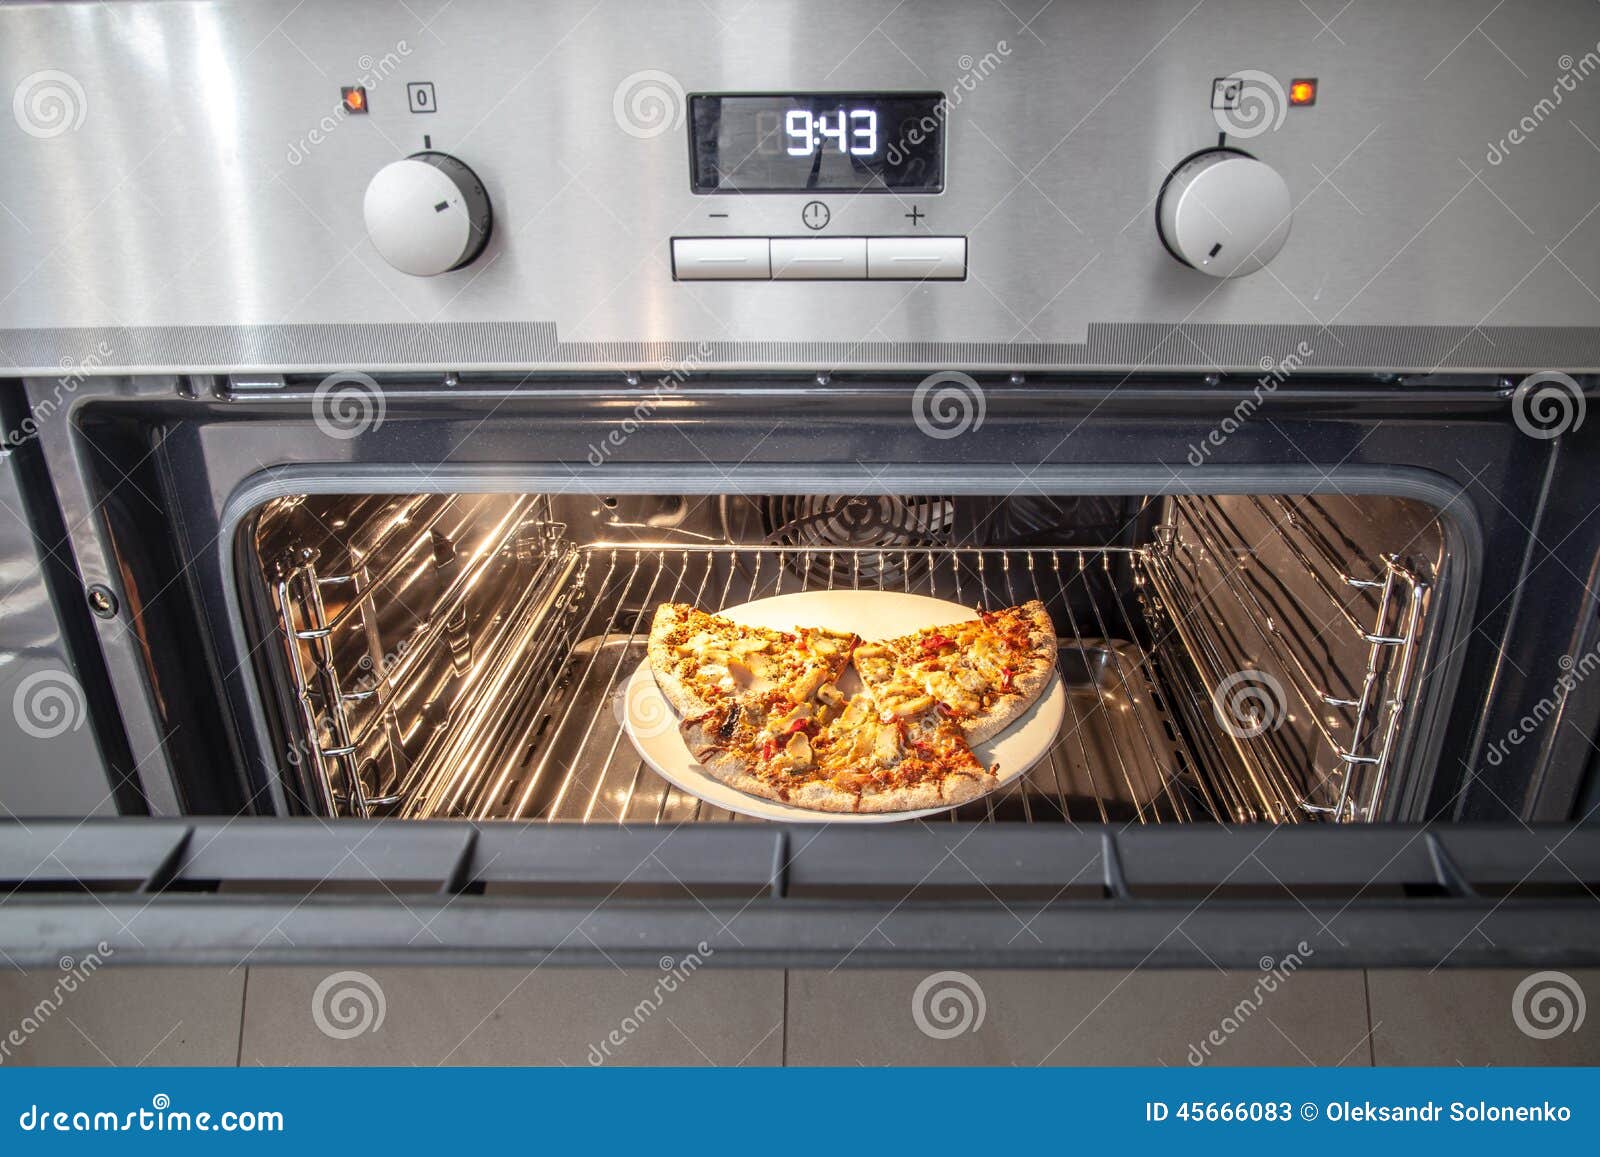 что такое режим пицца в духовке фото 97